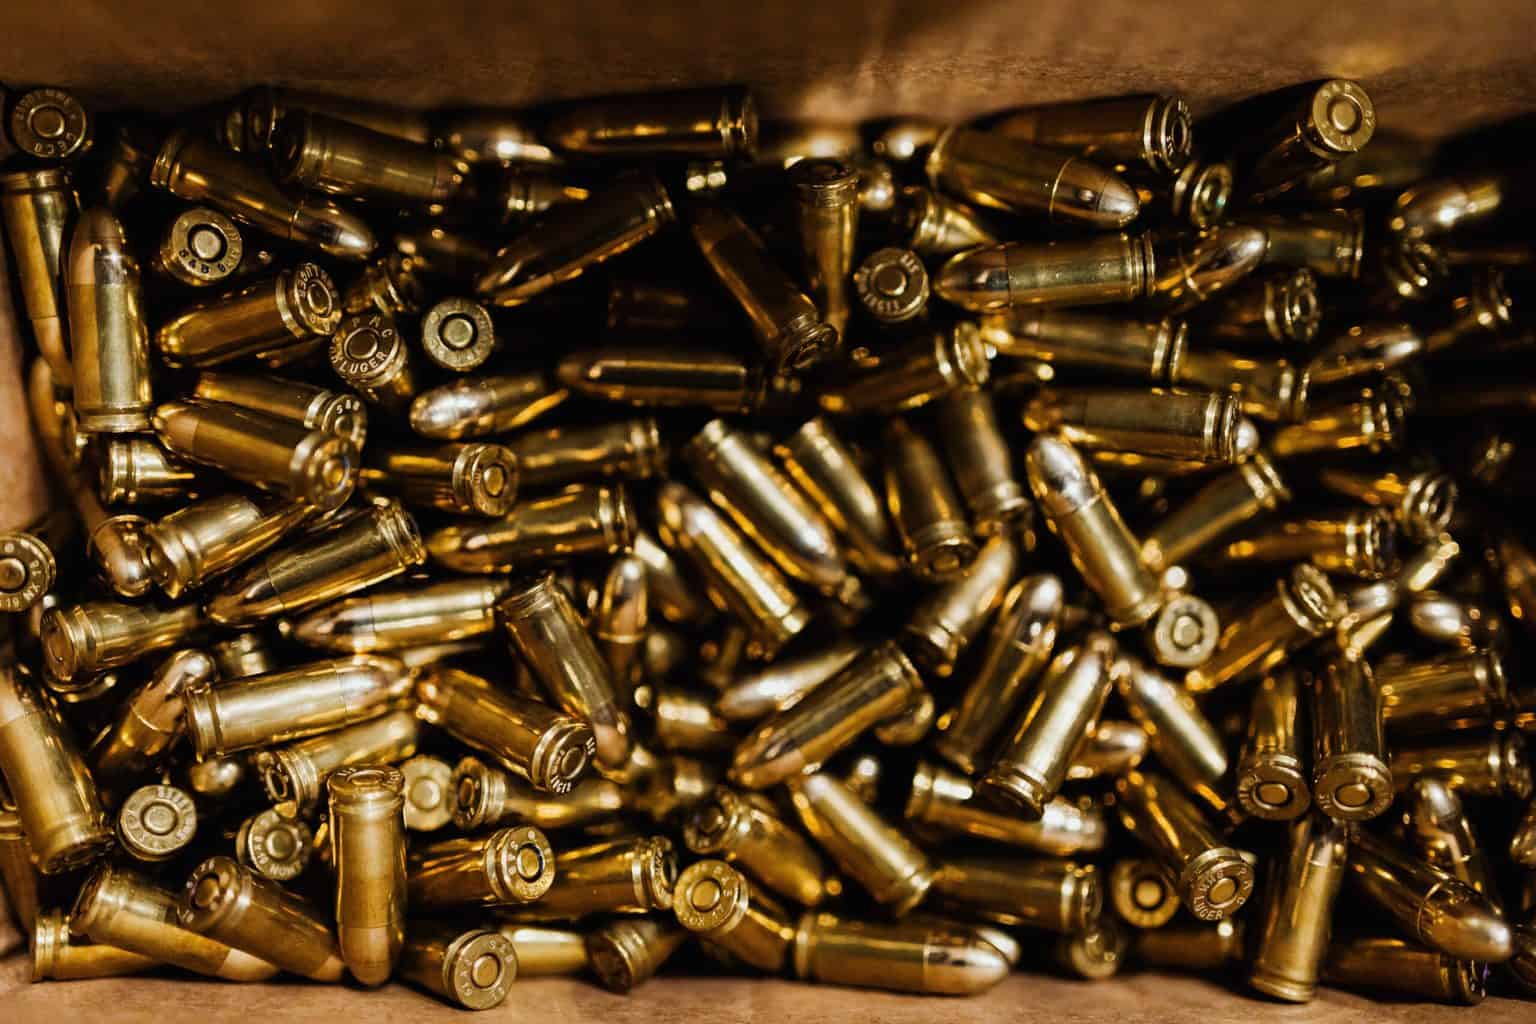 Bullets for reloading